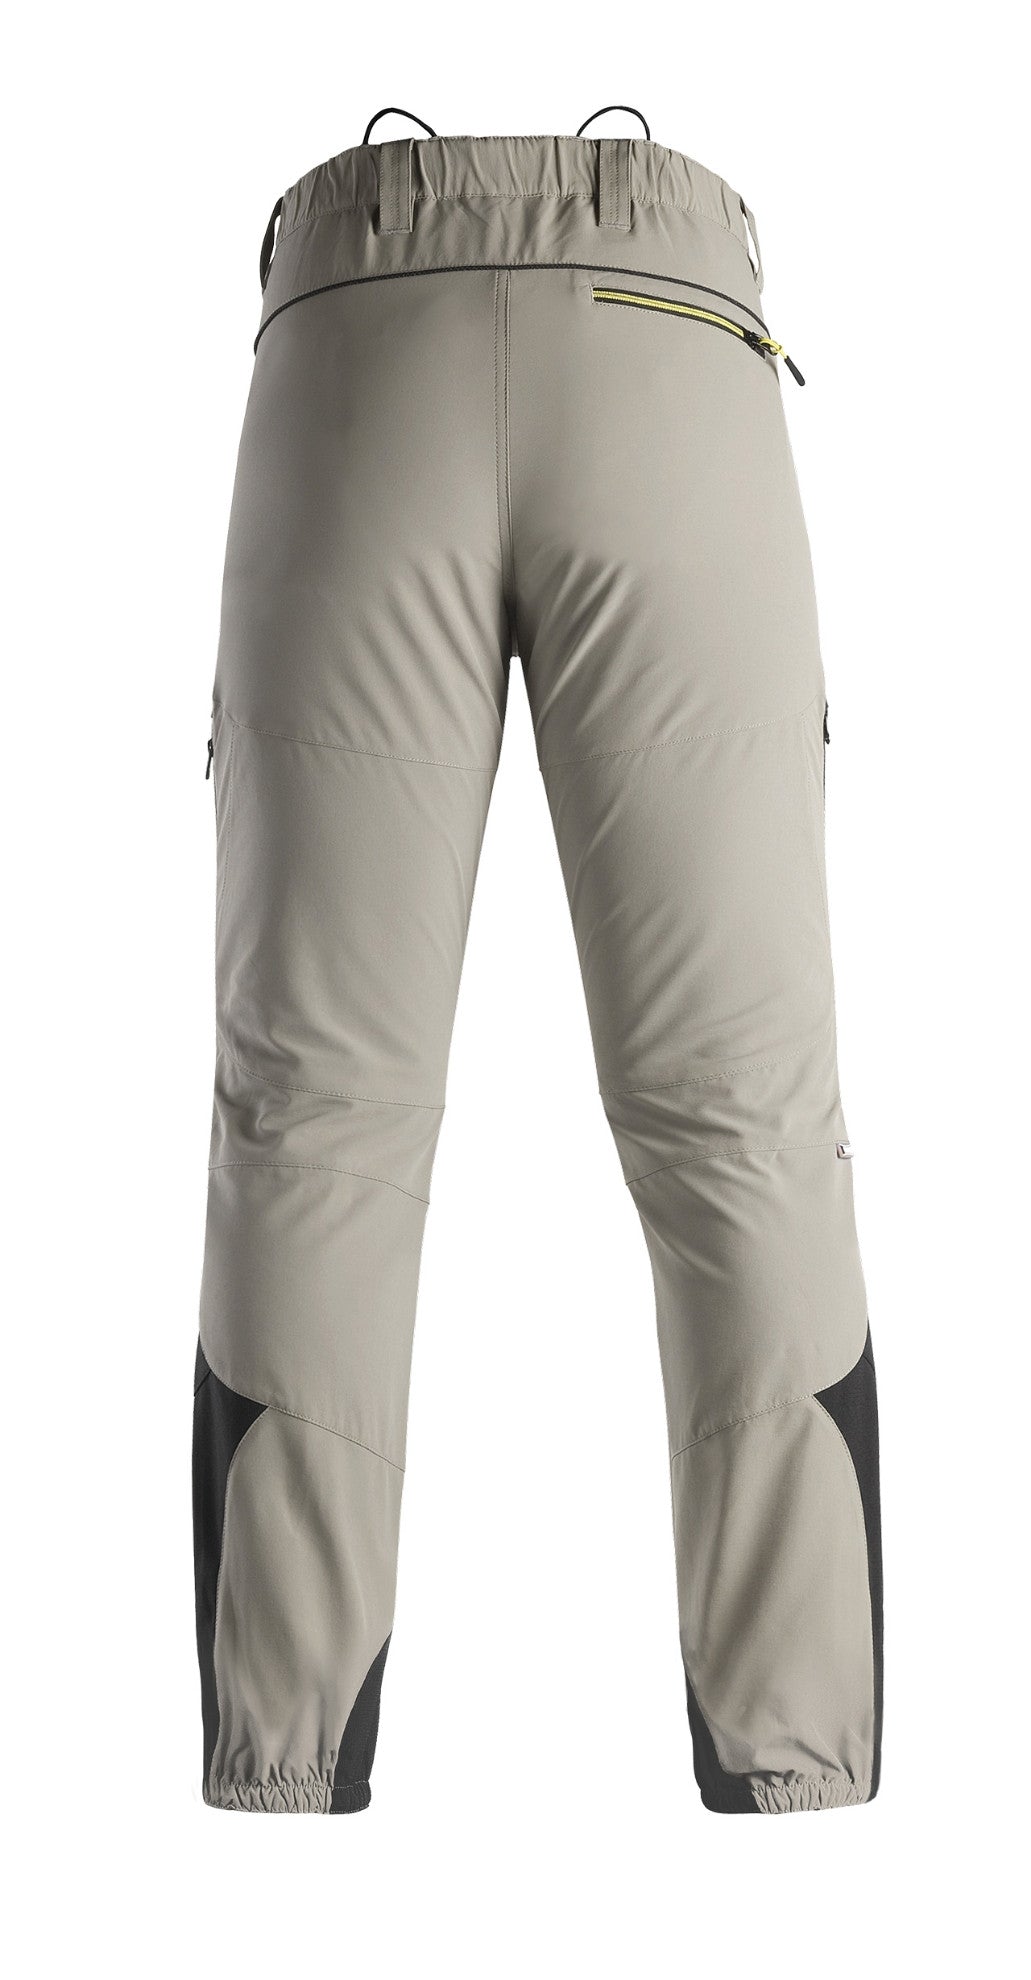 Beige Tech Kapriol elastic pants